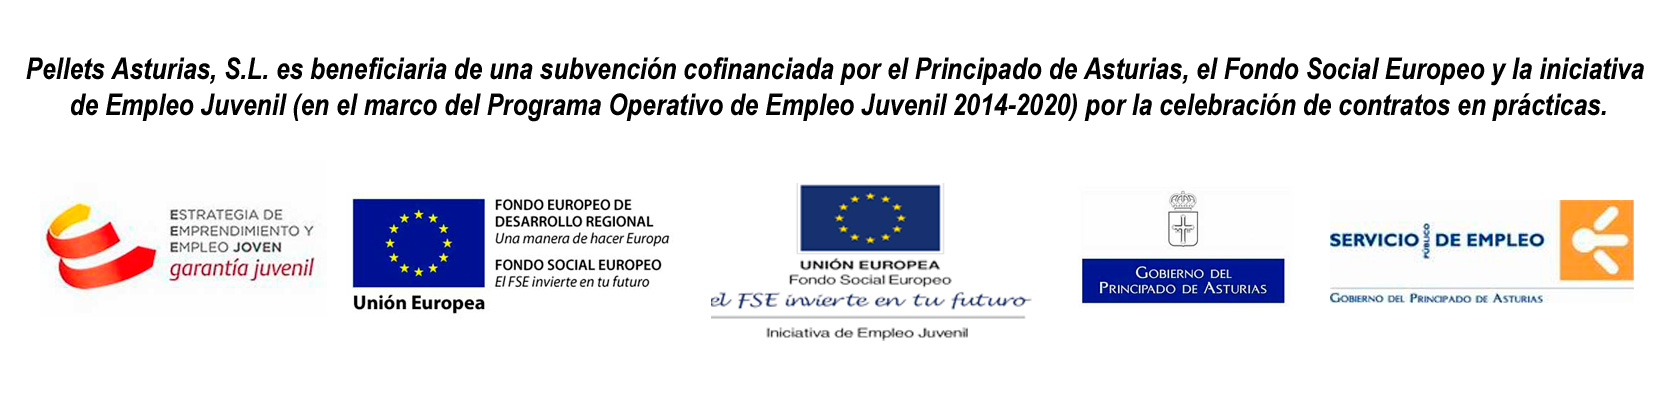 Pellets Asturias, S.L. es beneficiaria de una subvención confinanciada por el Principado de Asturias, el Fondo Social Europeo y la iniciativa de Empleo Juvenil (en el marco del Programa Operativo de Empleo Juvenil 2014-2020) por la celebración de contratos de prácticas.